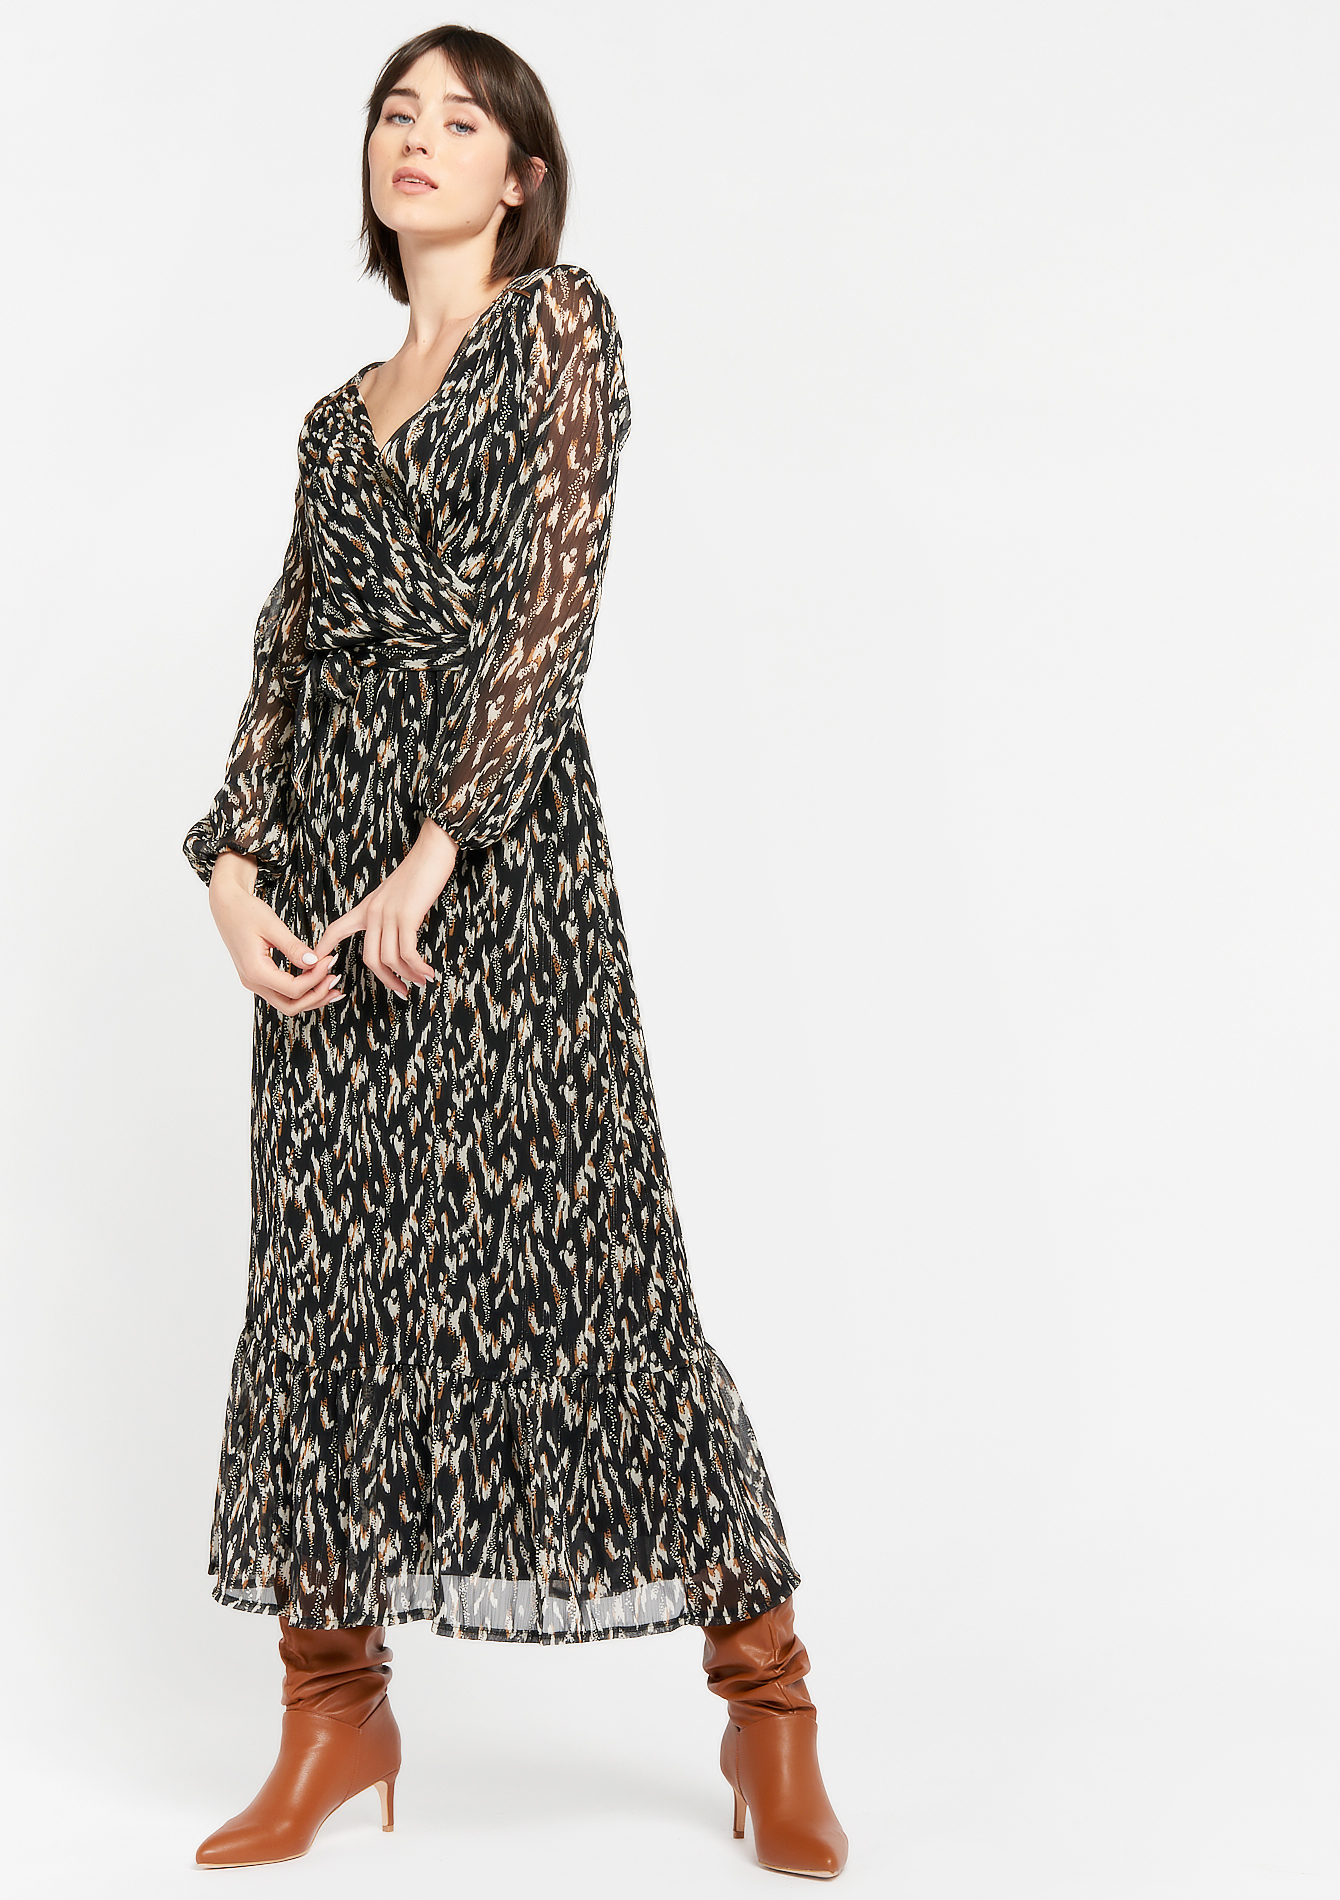 Robe maxi léopard  - BLACK BEAUTY - 08601225_2600